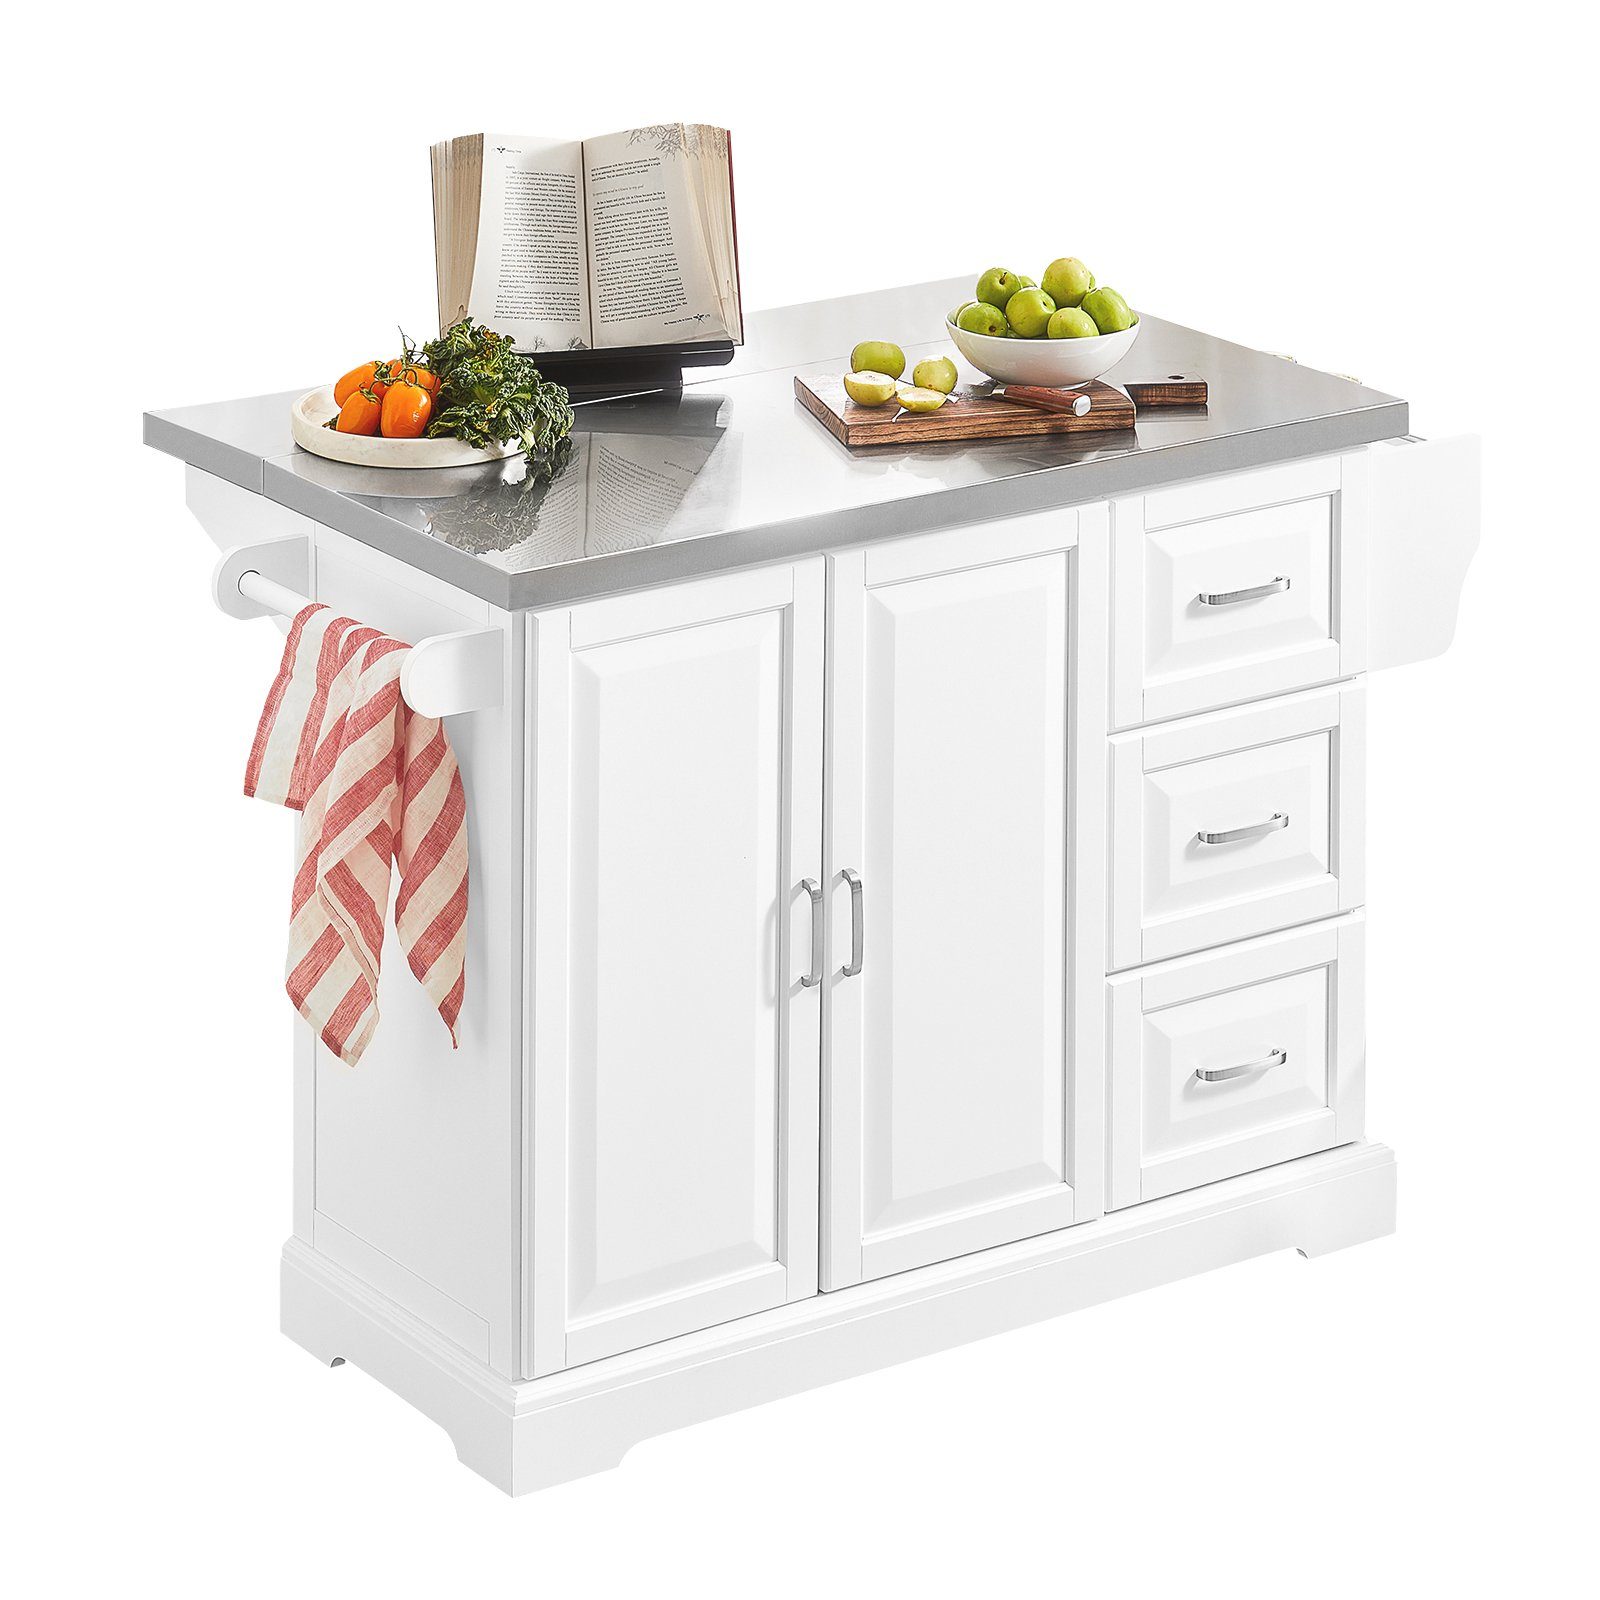 Küchenwagen SoBuy mit Küchenschrank weiß-grau FKW41, Kücheninsel Arbeitsfläche Sideboard erweiterbarer